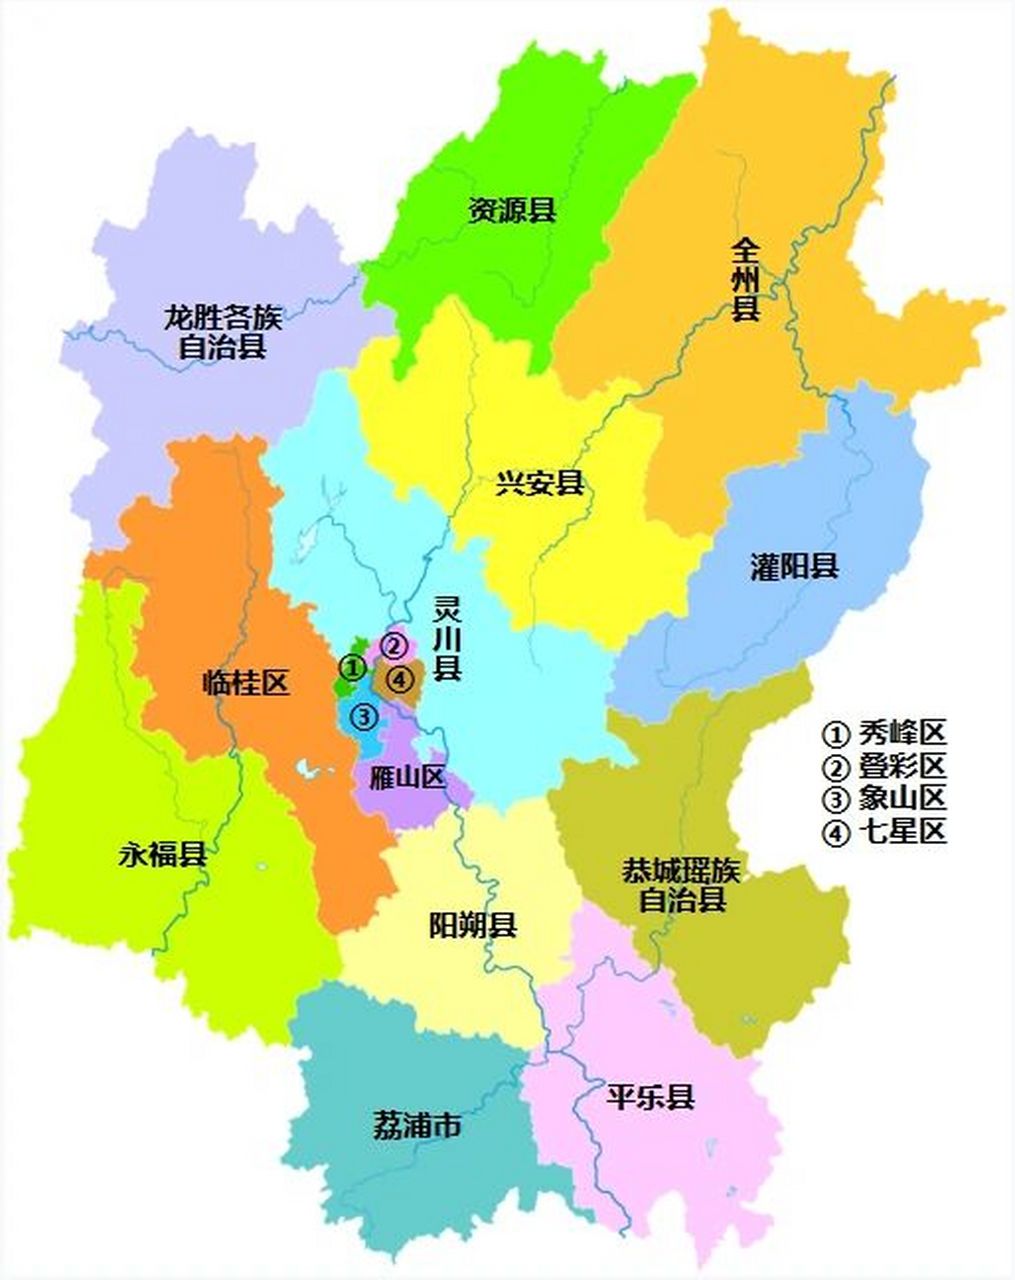 桂林全市划分为 6个区:秀峰区,叠彩区,象山区,七星区,雁山区,临桂